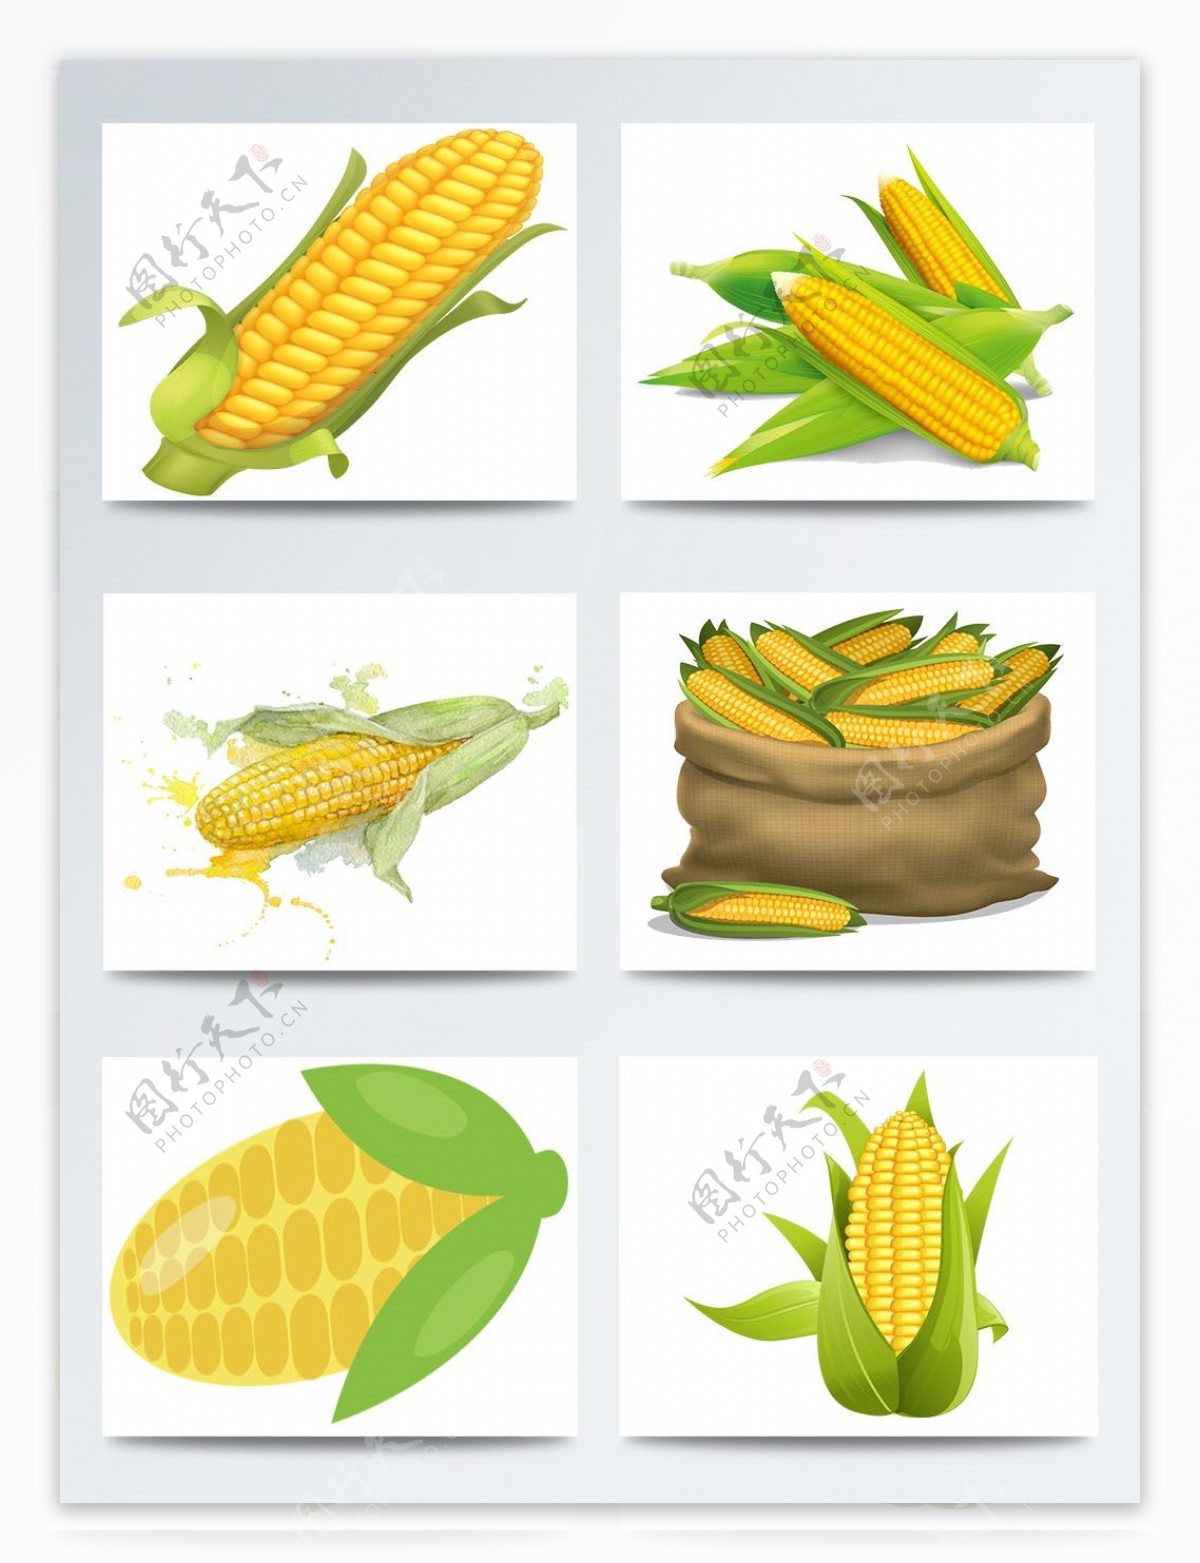 一组手绘玉米图案合集